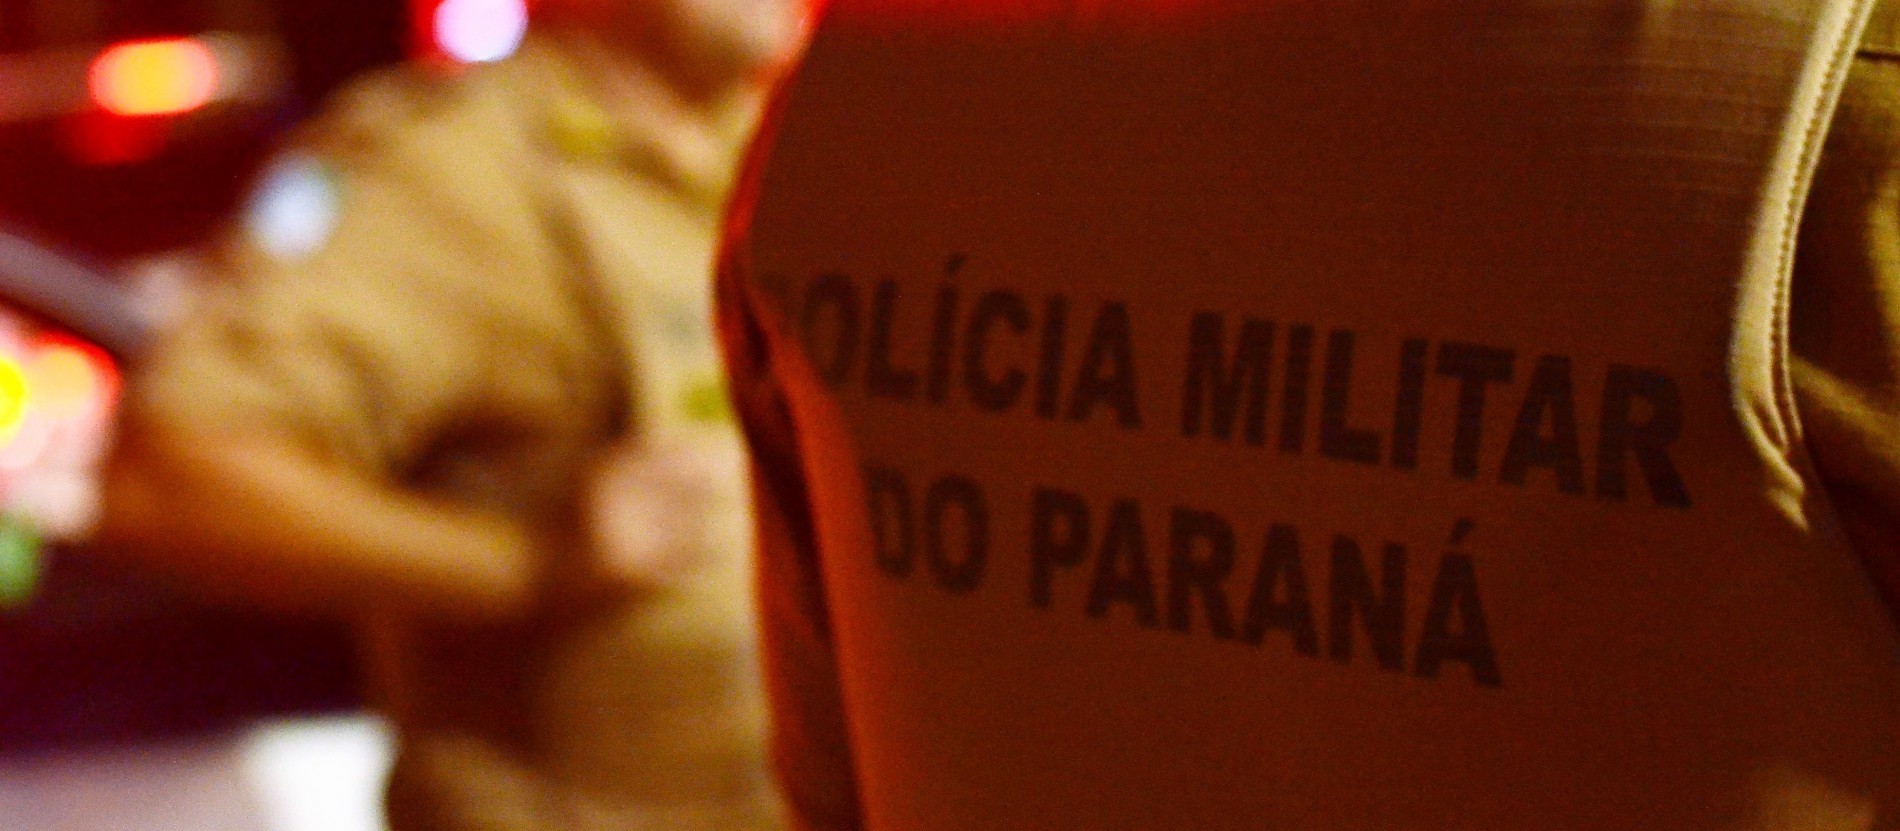 Filho mata pai a facadas em Alto Paraná, diz PM